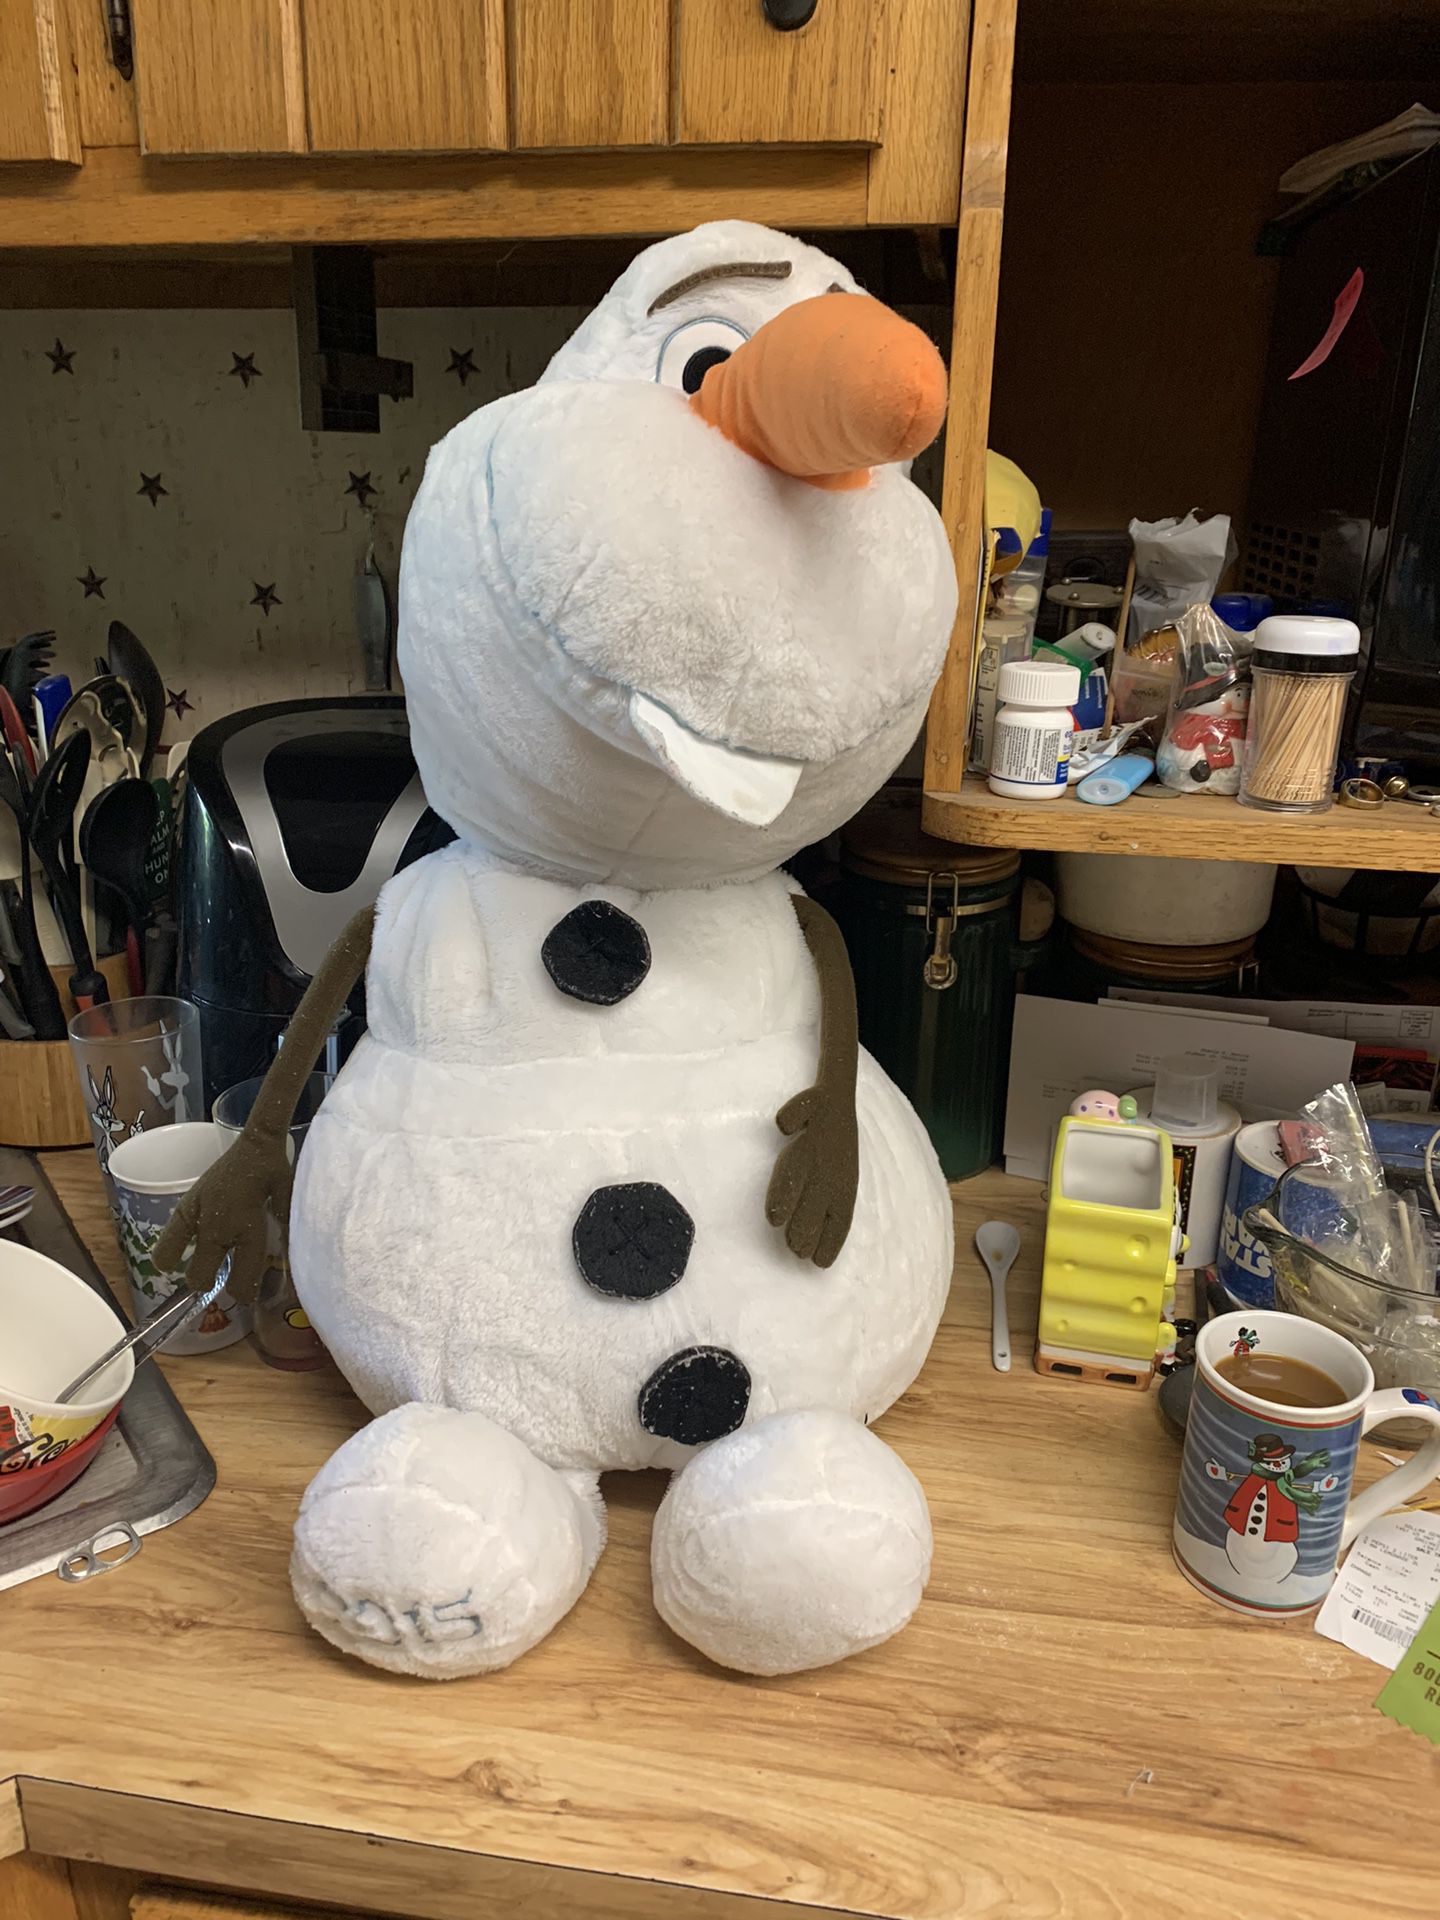 Olaf Stuffed Toy